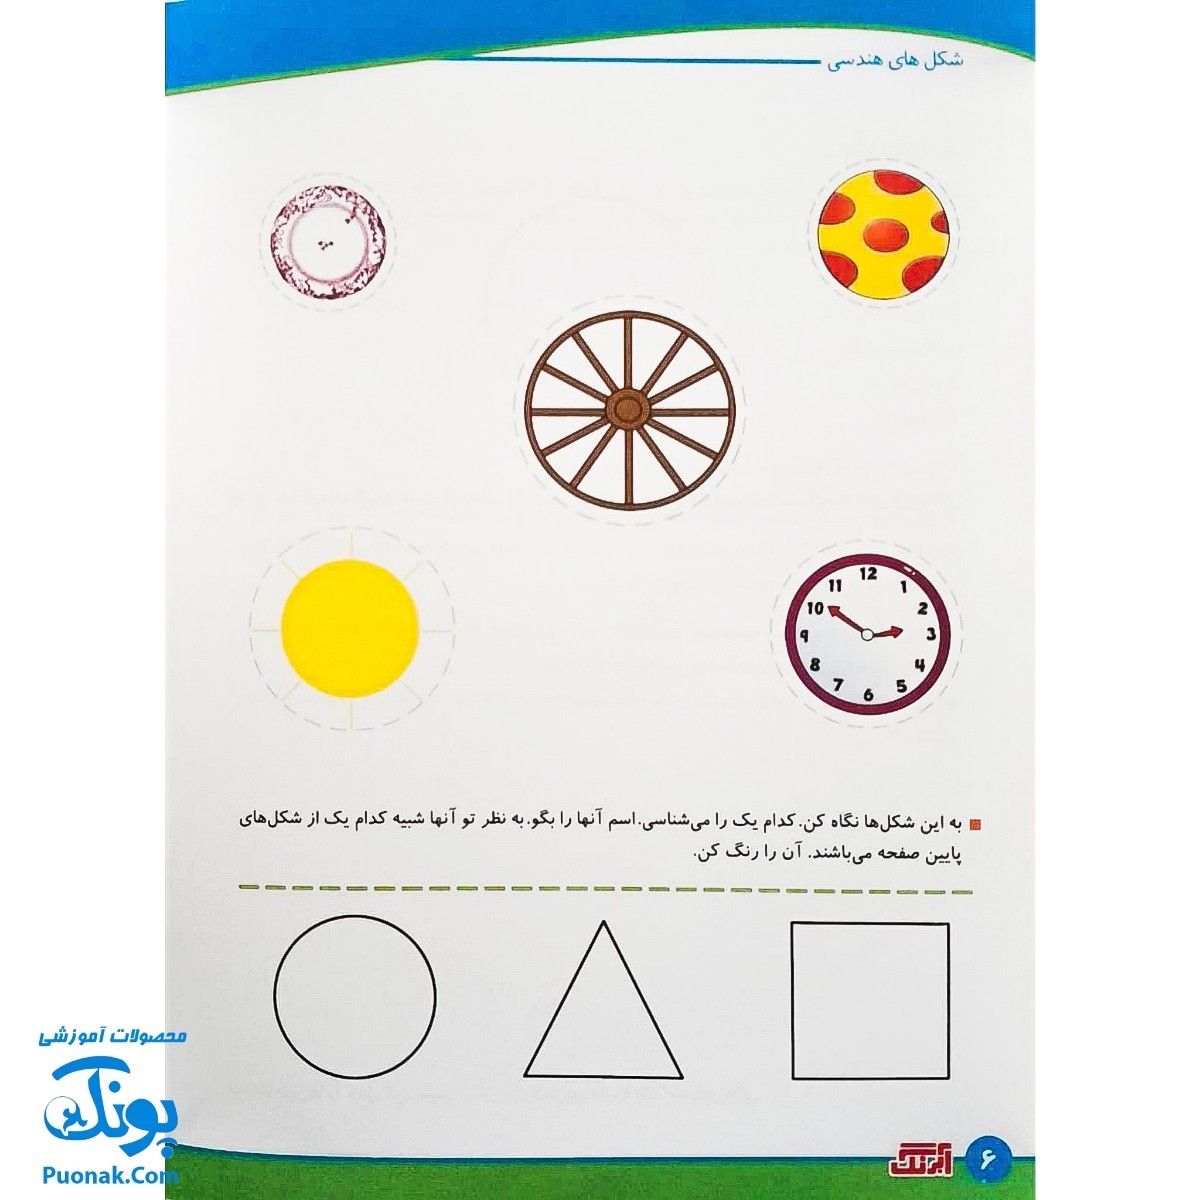 کتاب آموزشی مفاهیم ریاضی 4 "شکل های هندسی"  برای کودکان 4 تا 6 سال